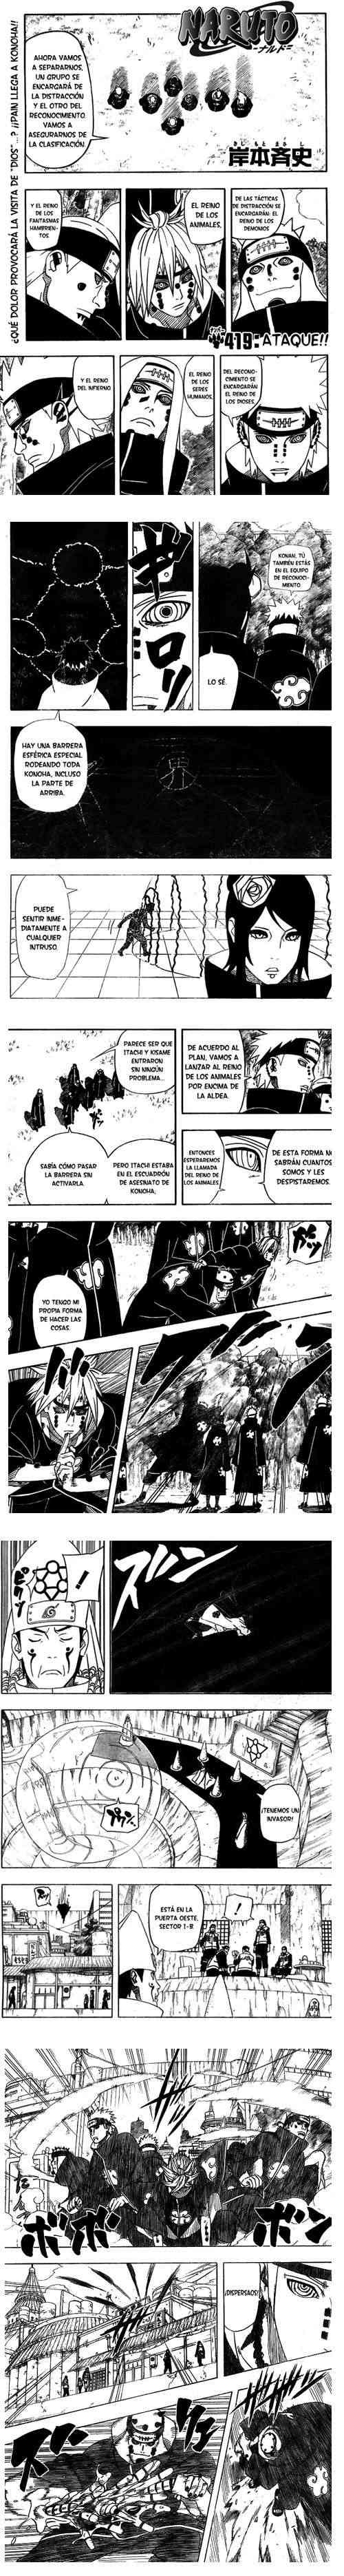 -Naruto Manga- - Pgina 3 1-510